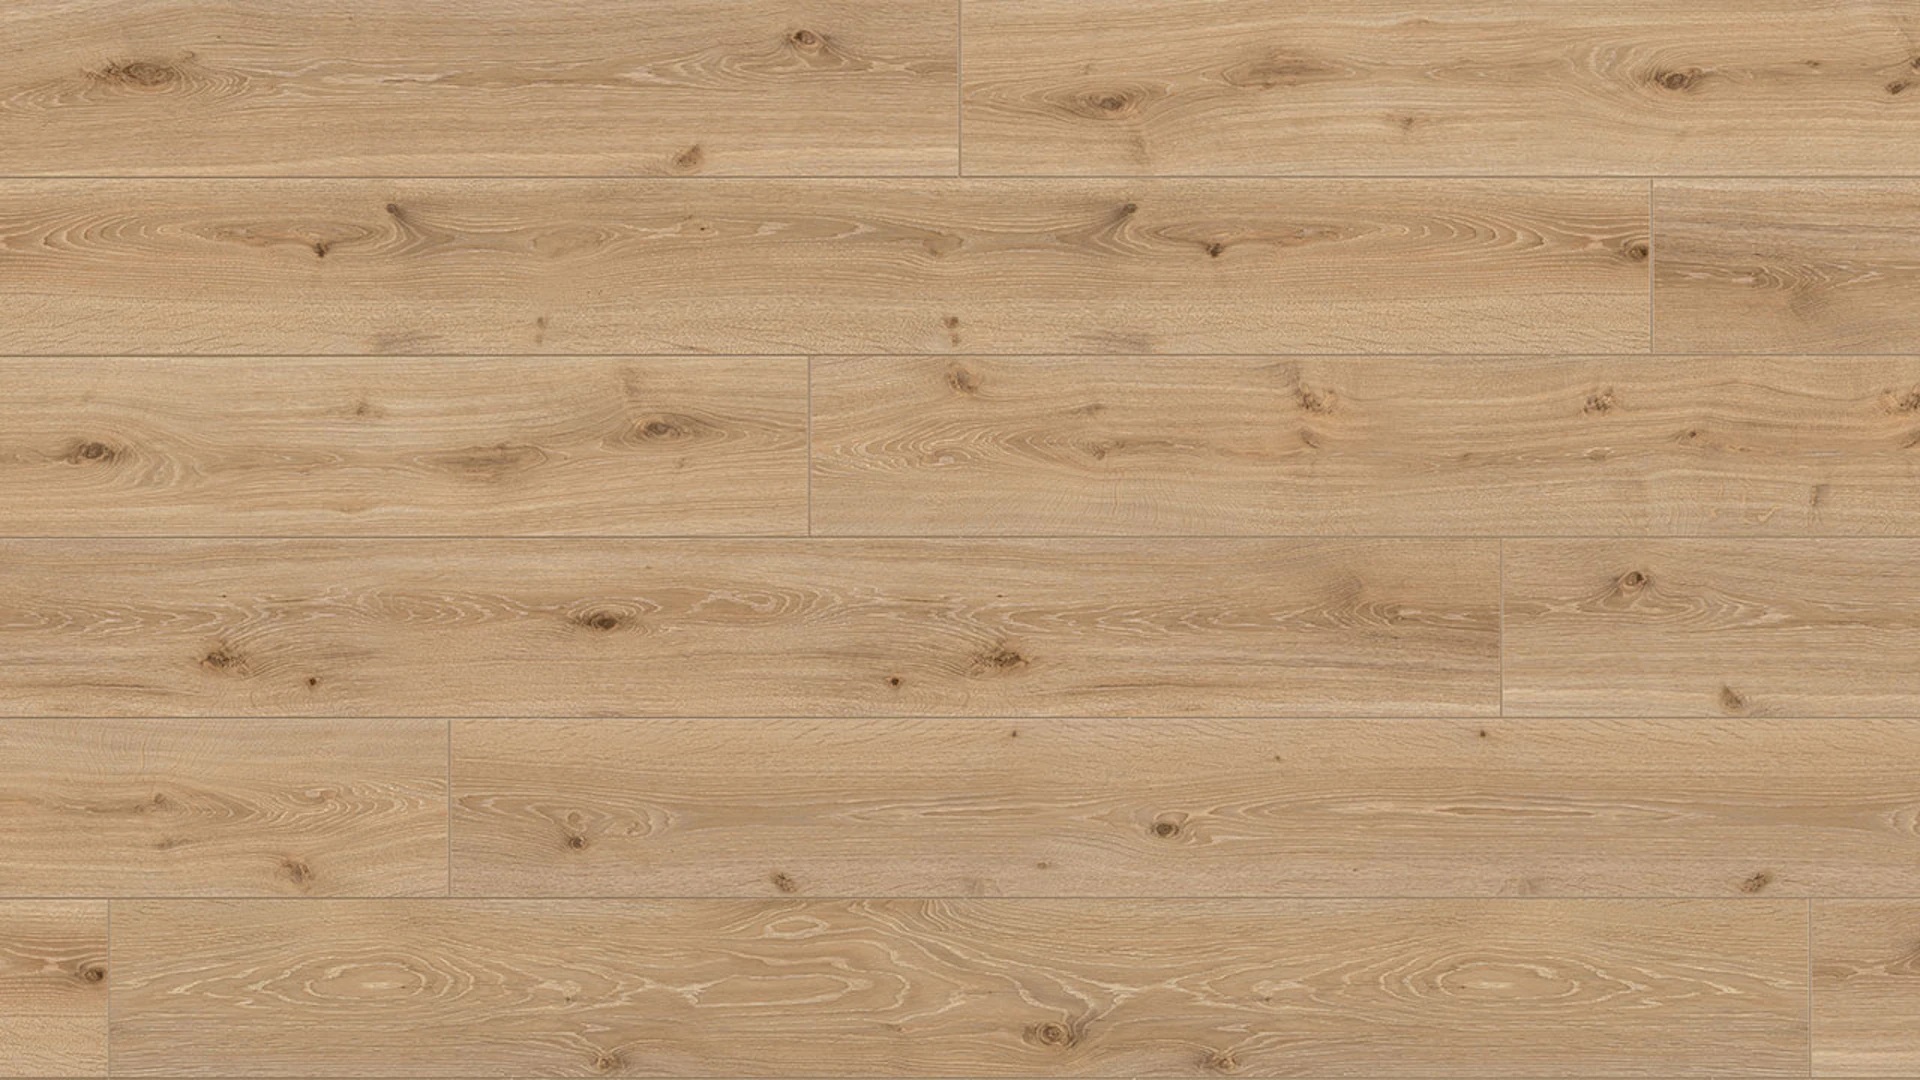 Pavimentazione in laminato Parador - Trendtime 6 - Rovere Castell Limed Full Plank 1-plank Texture spazzolato